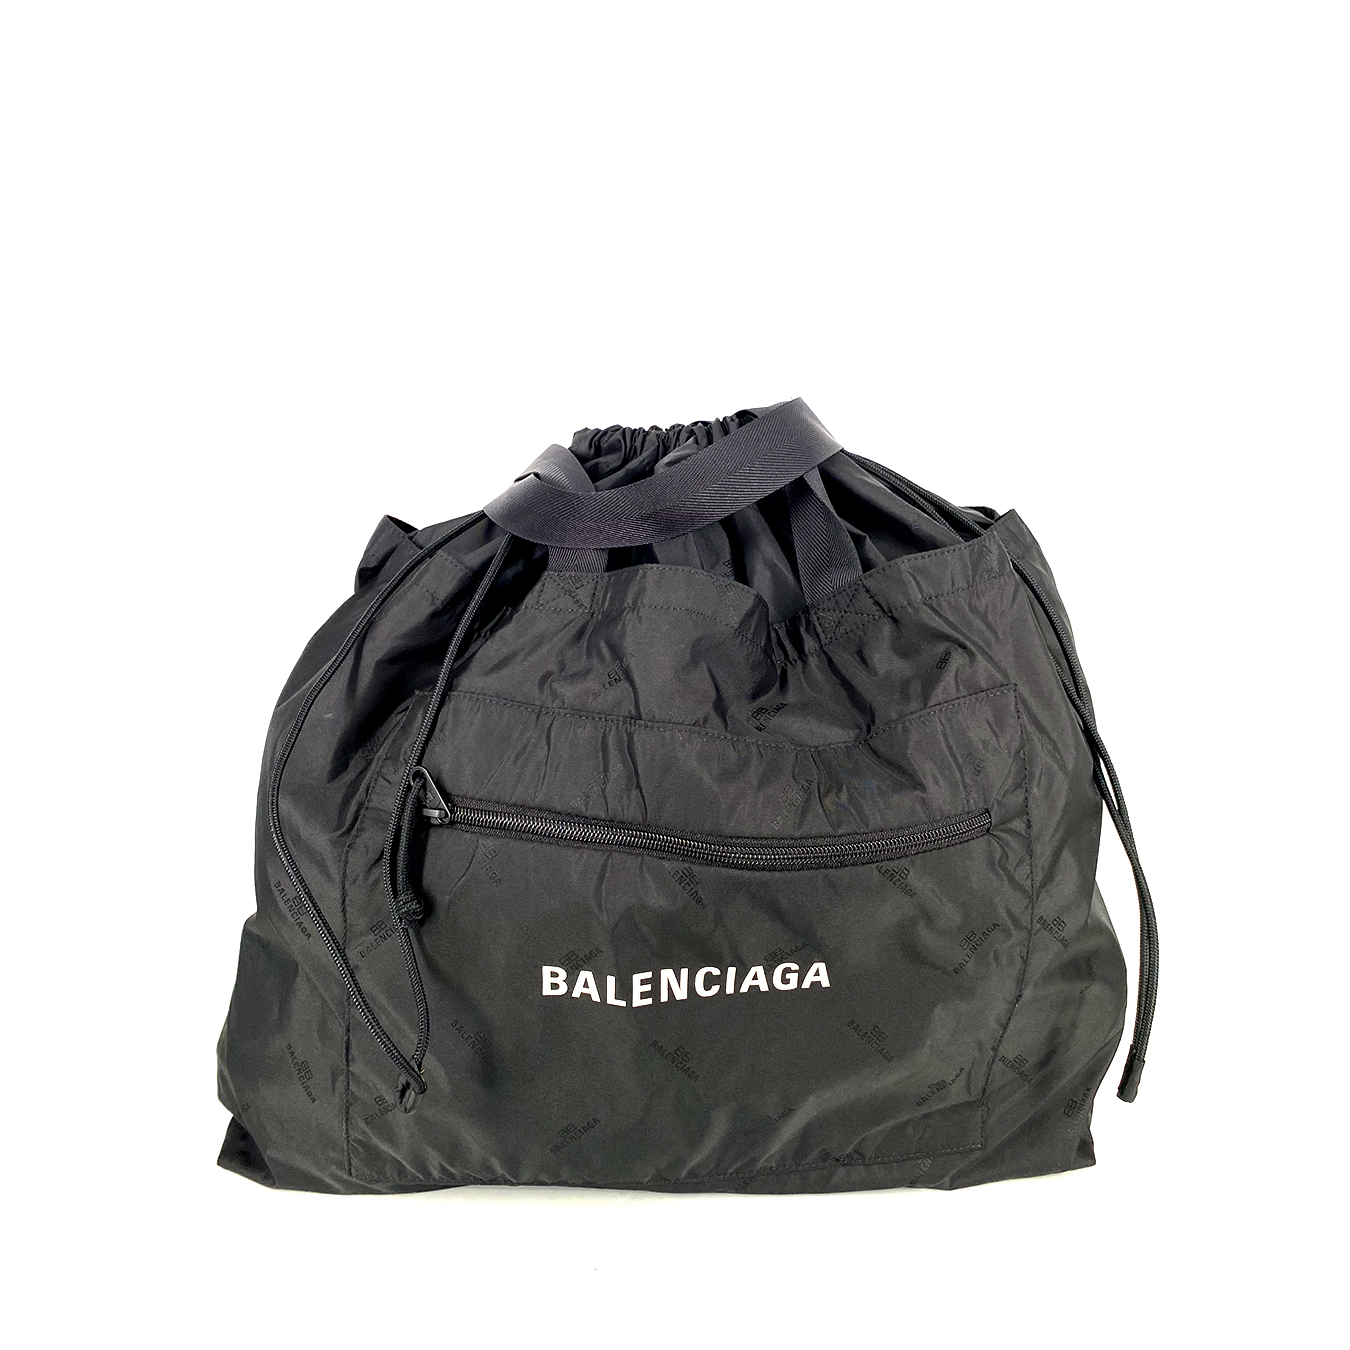 Balenciaga Travel Bag Canvas Black